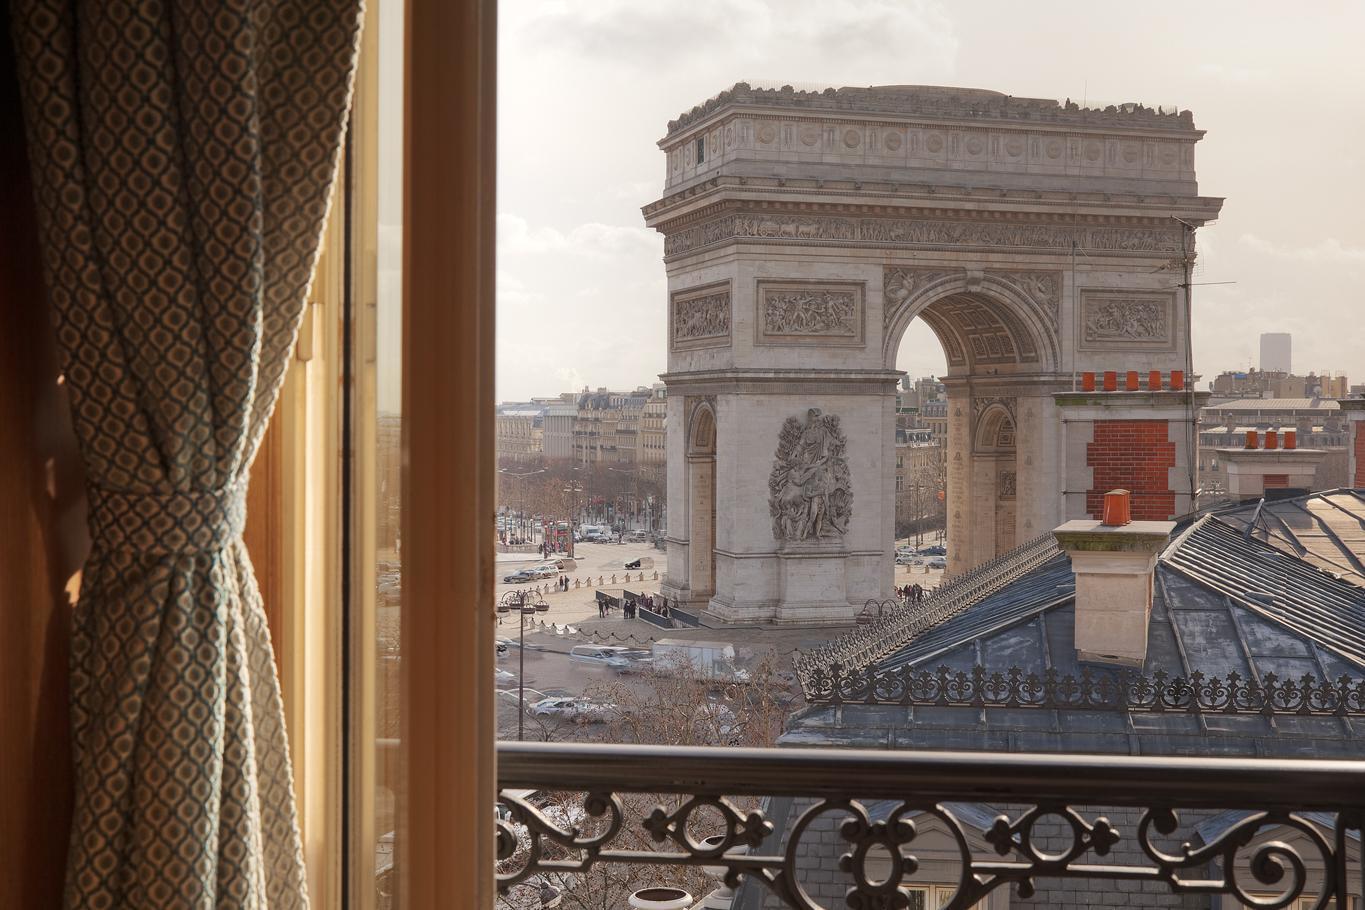 Splendid Etoile Hotel Párizs Szoba fotó